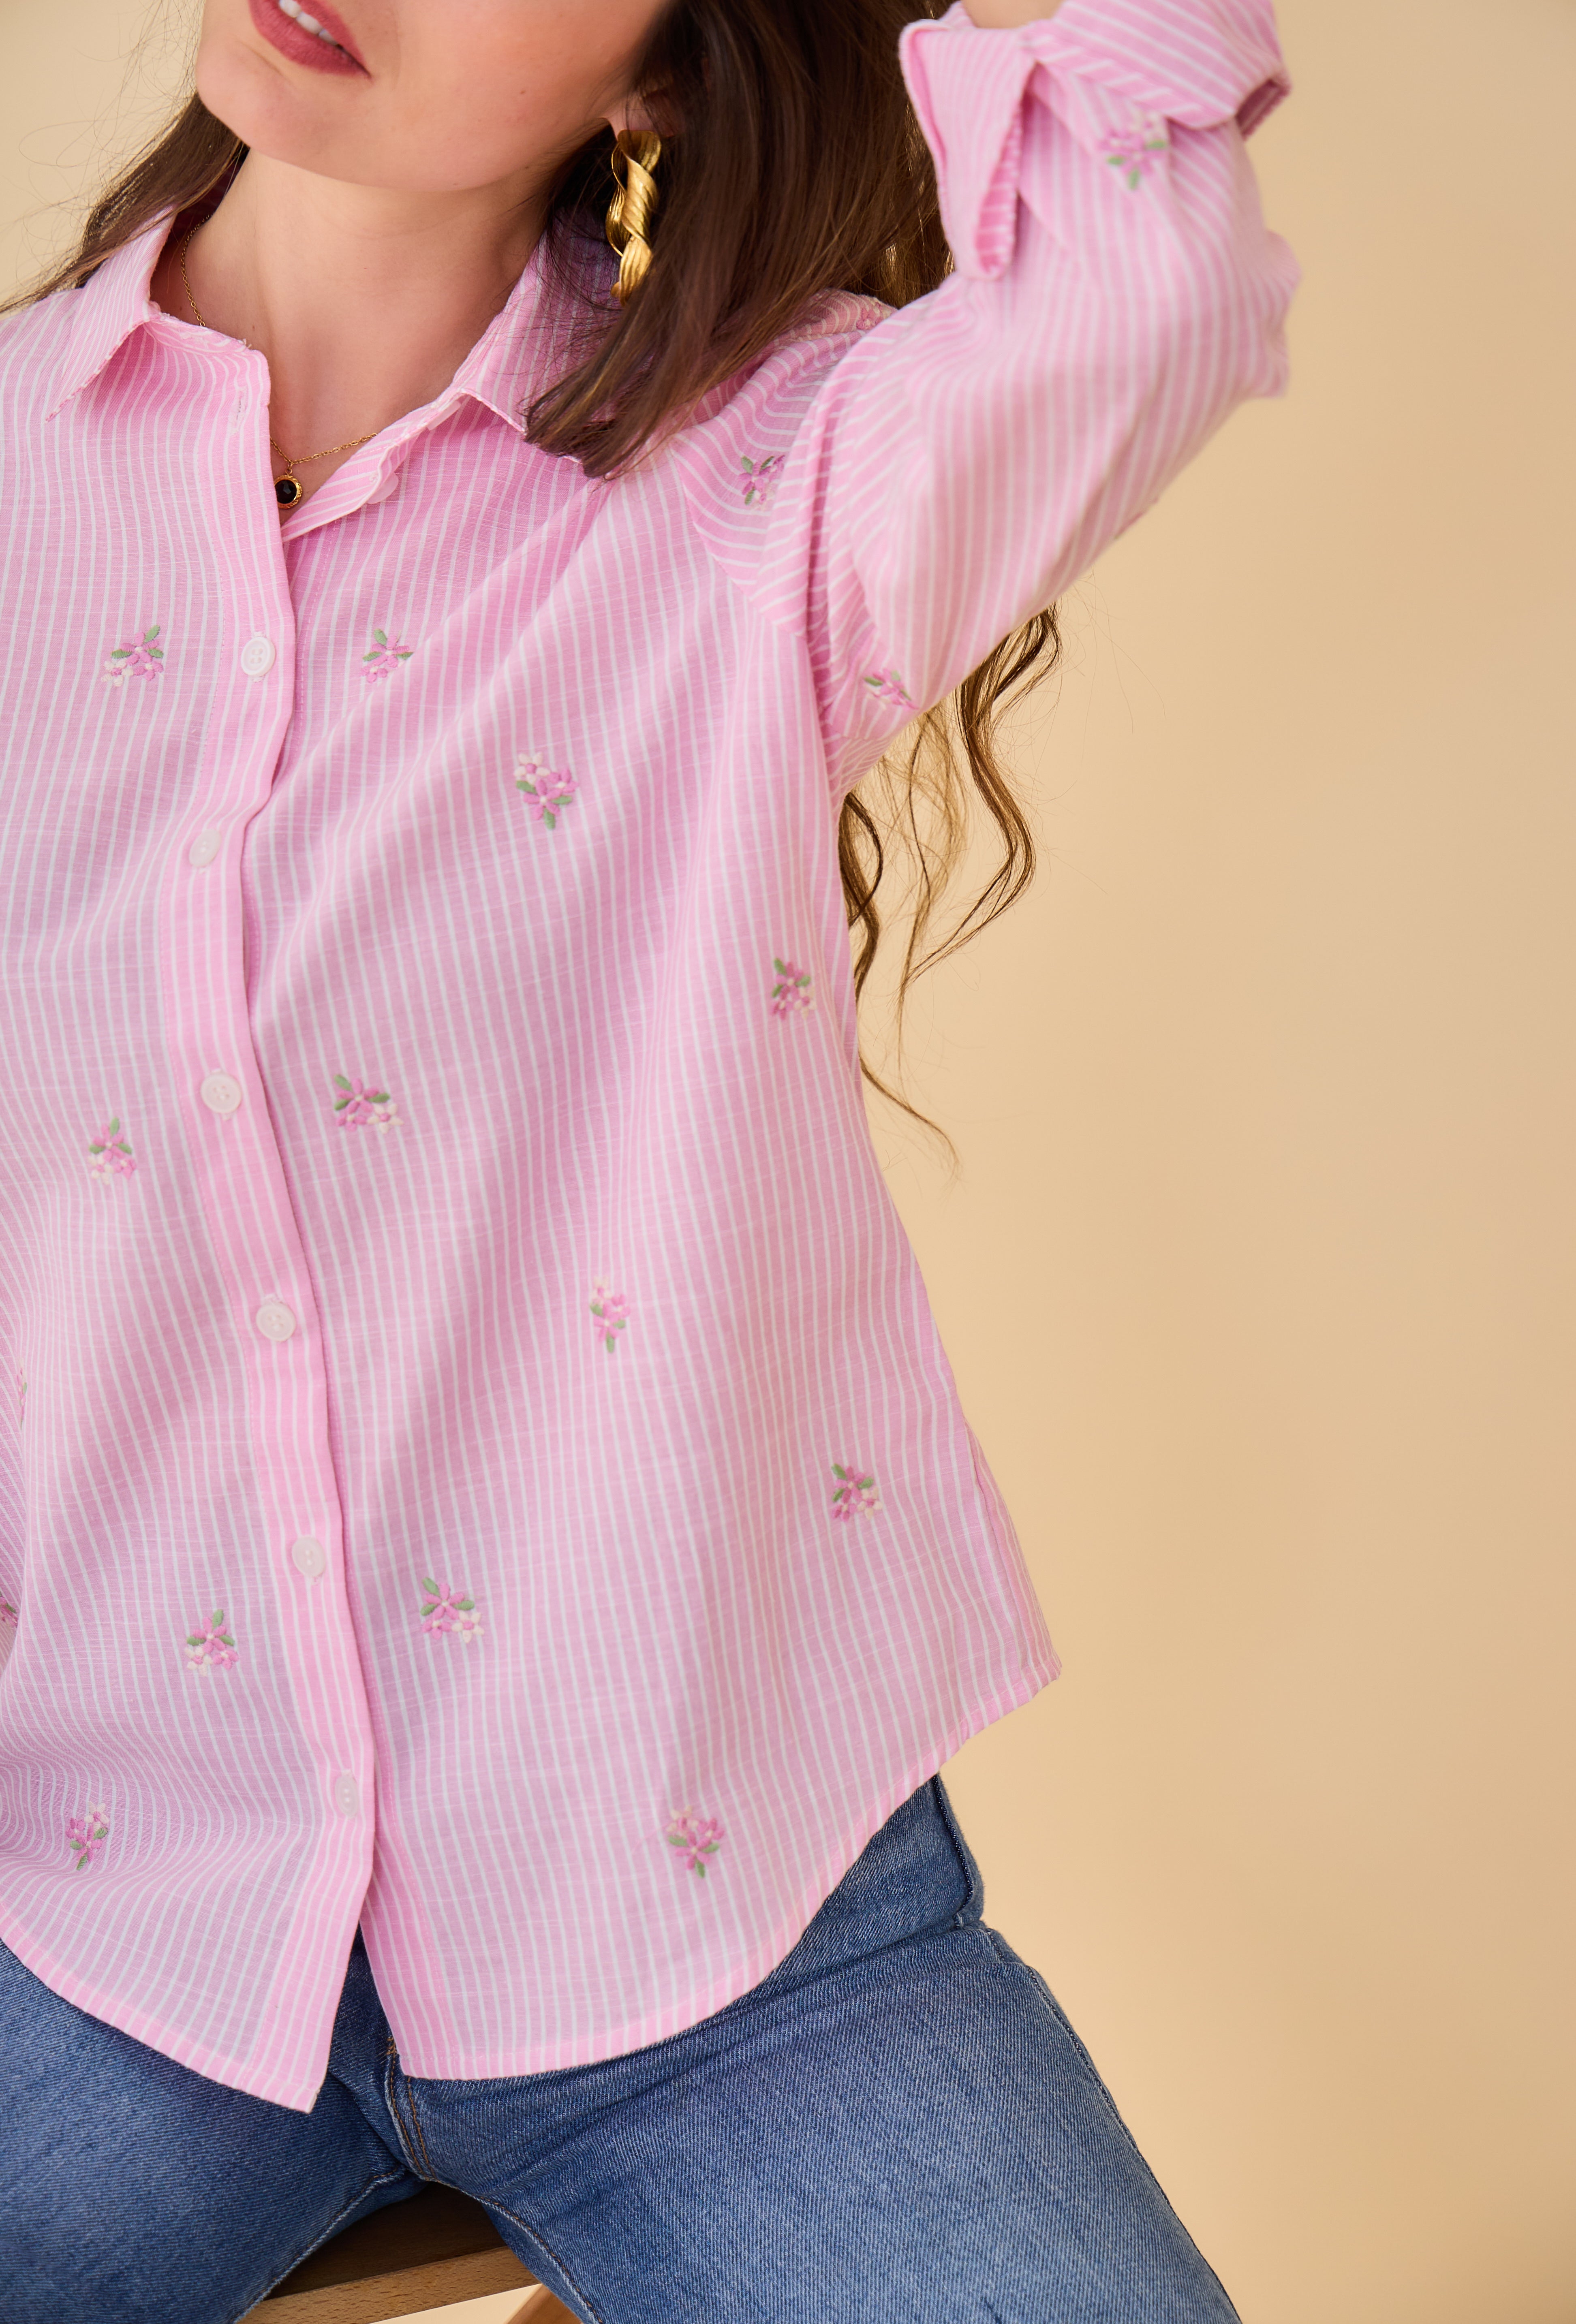 chemise rose rayé à broderies fleuries, col français et boutonnière, bas arrondi